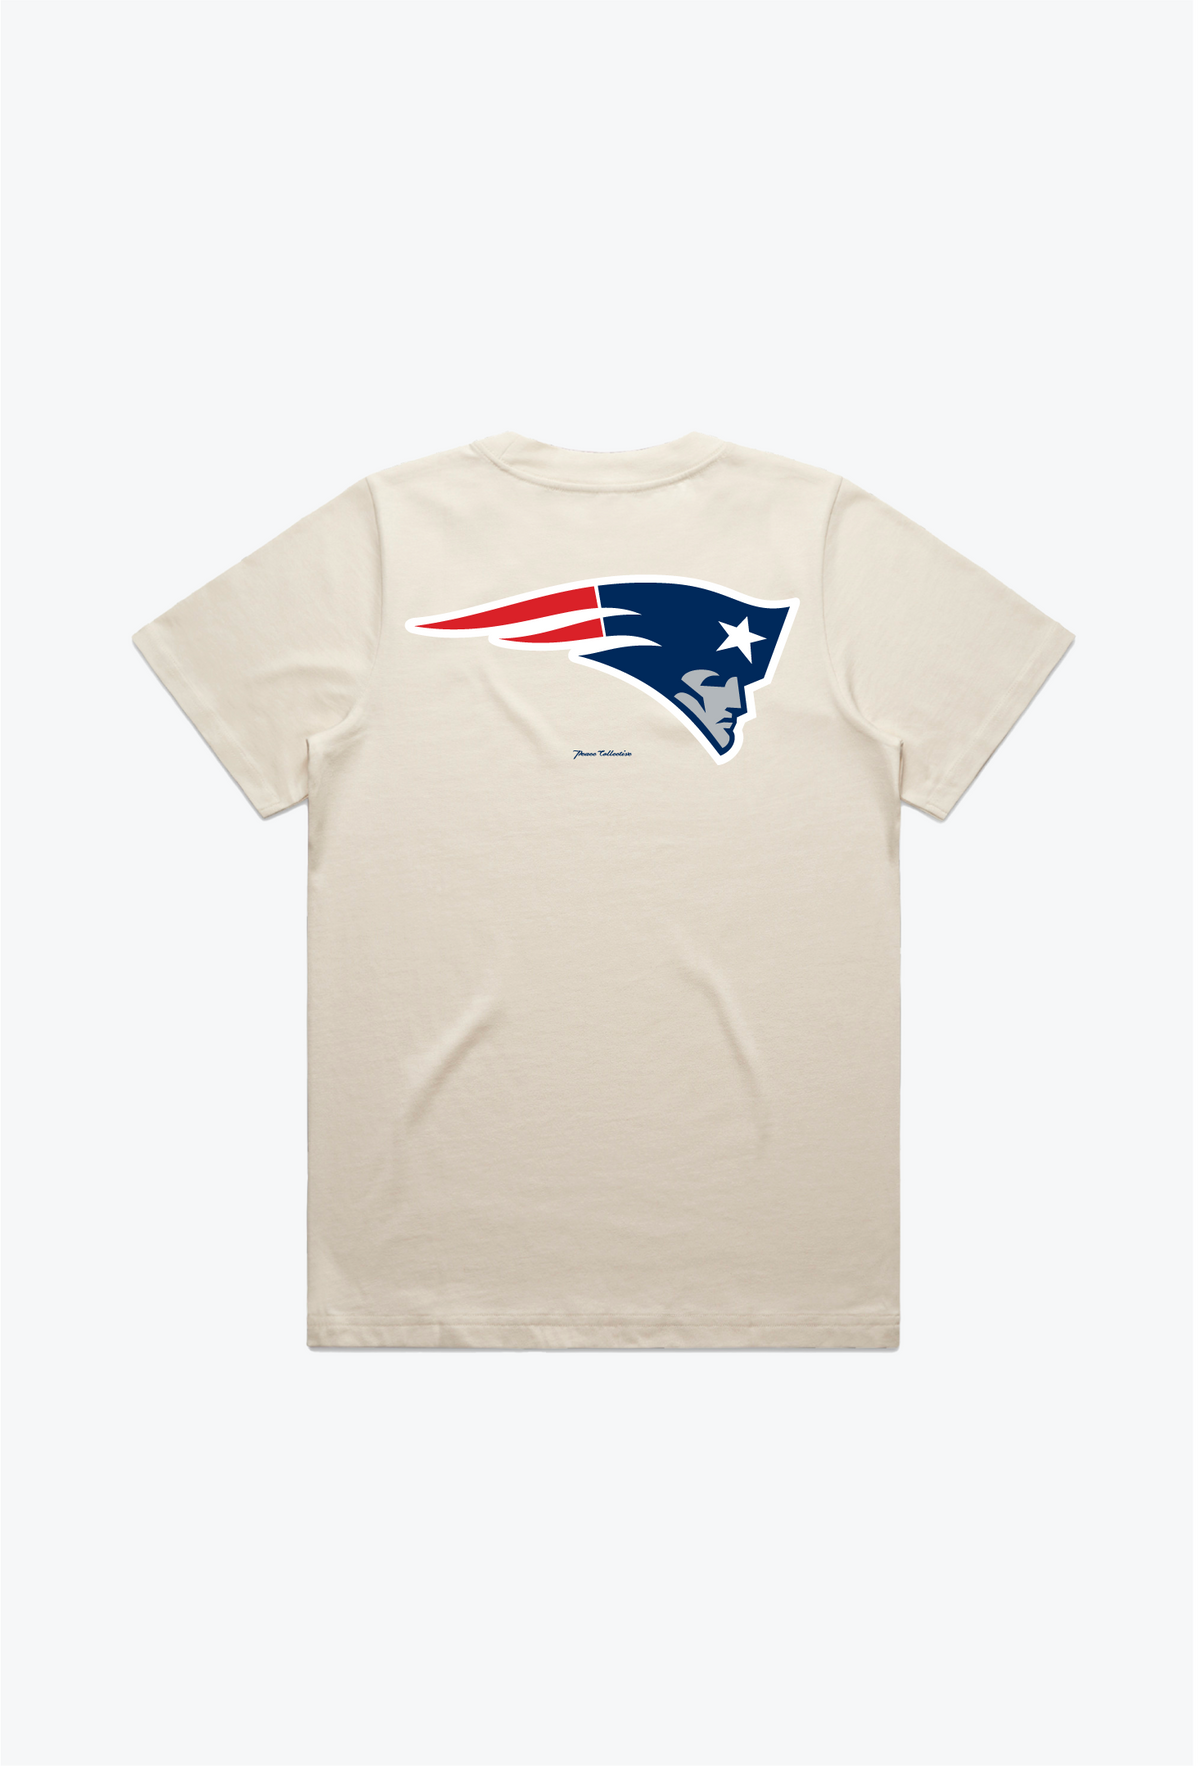 New England Patriots Women's Heavyweight T-Shirt - Natural